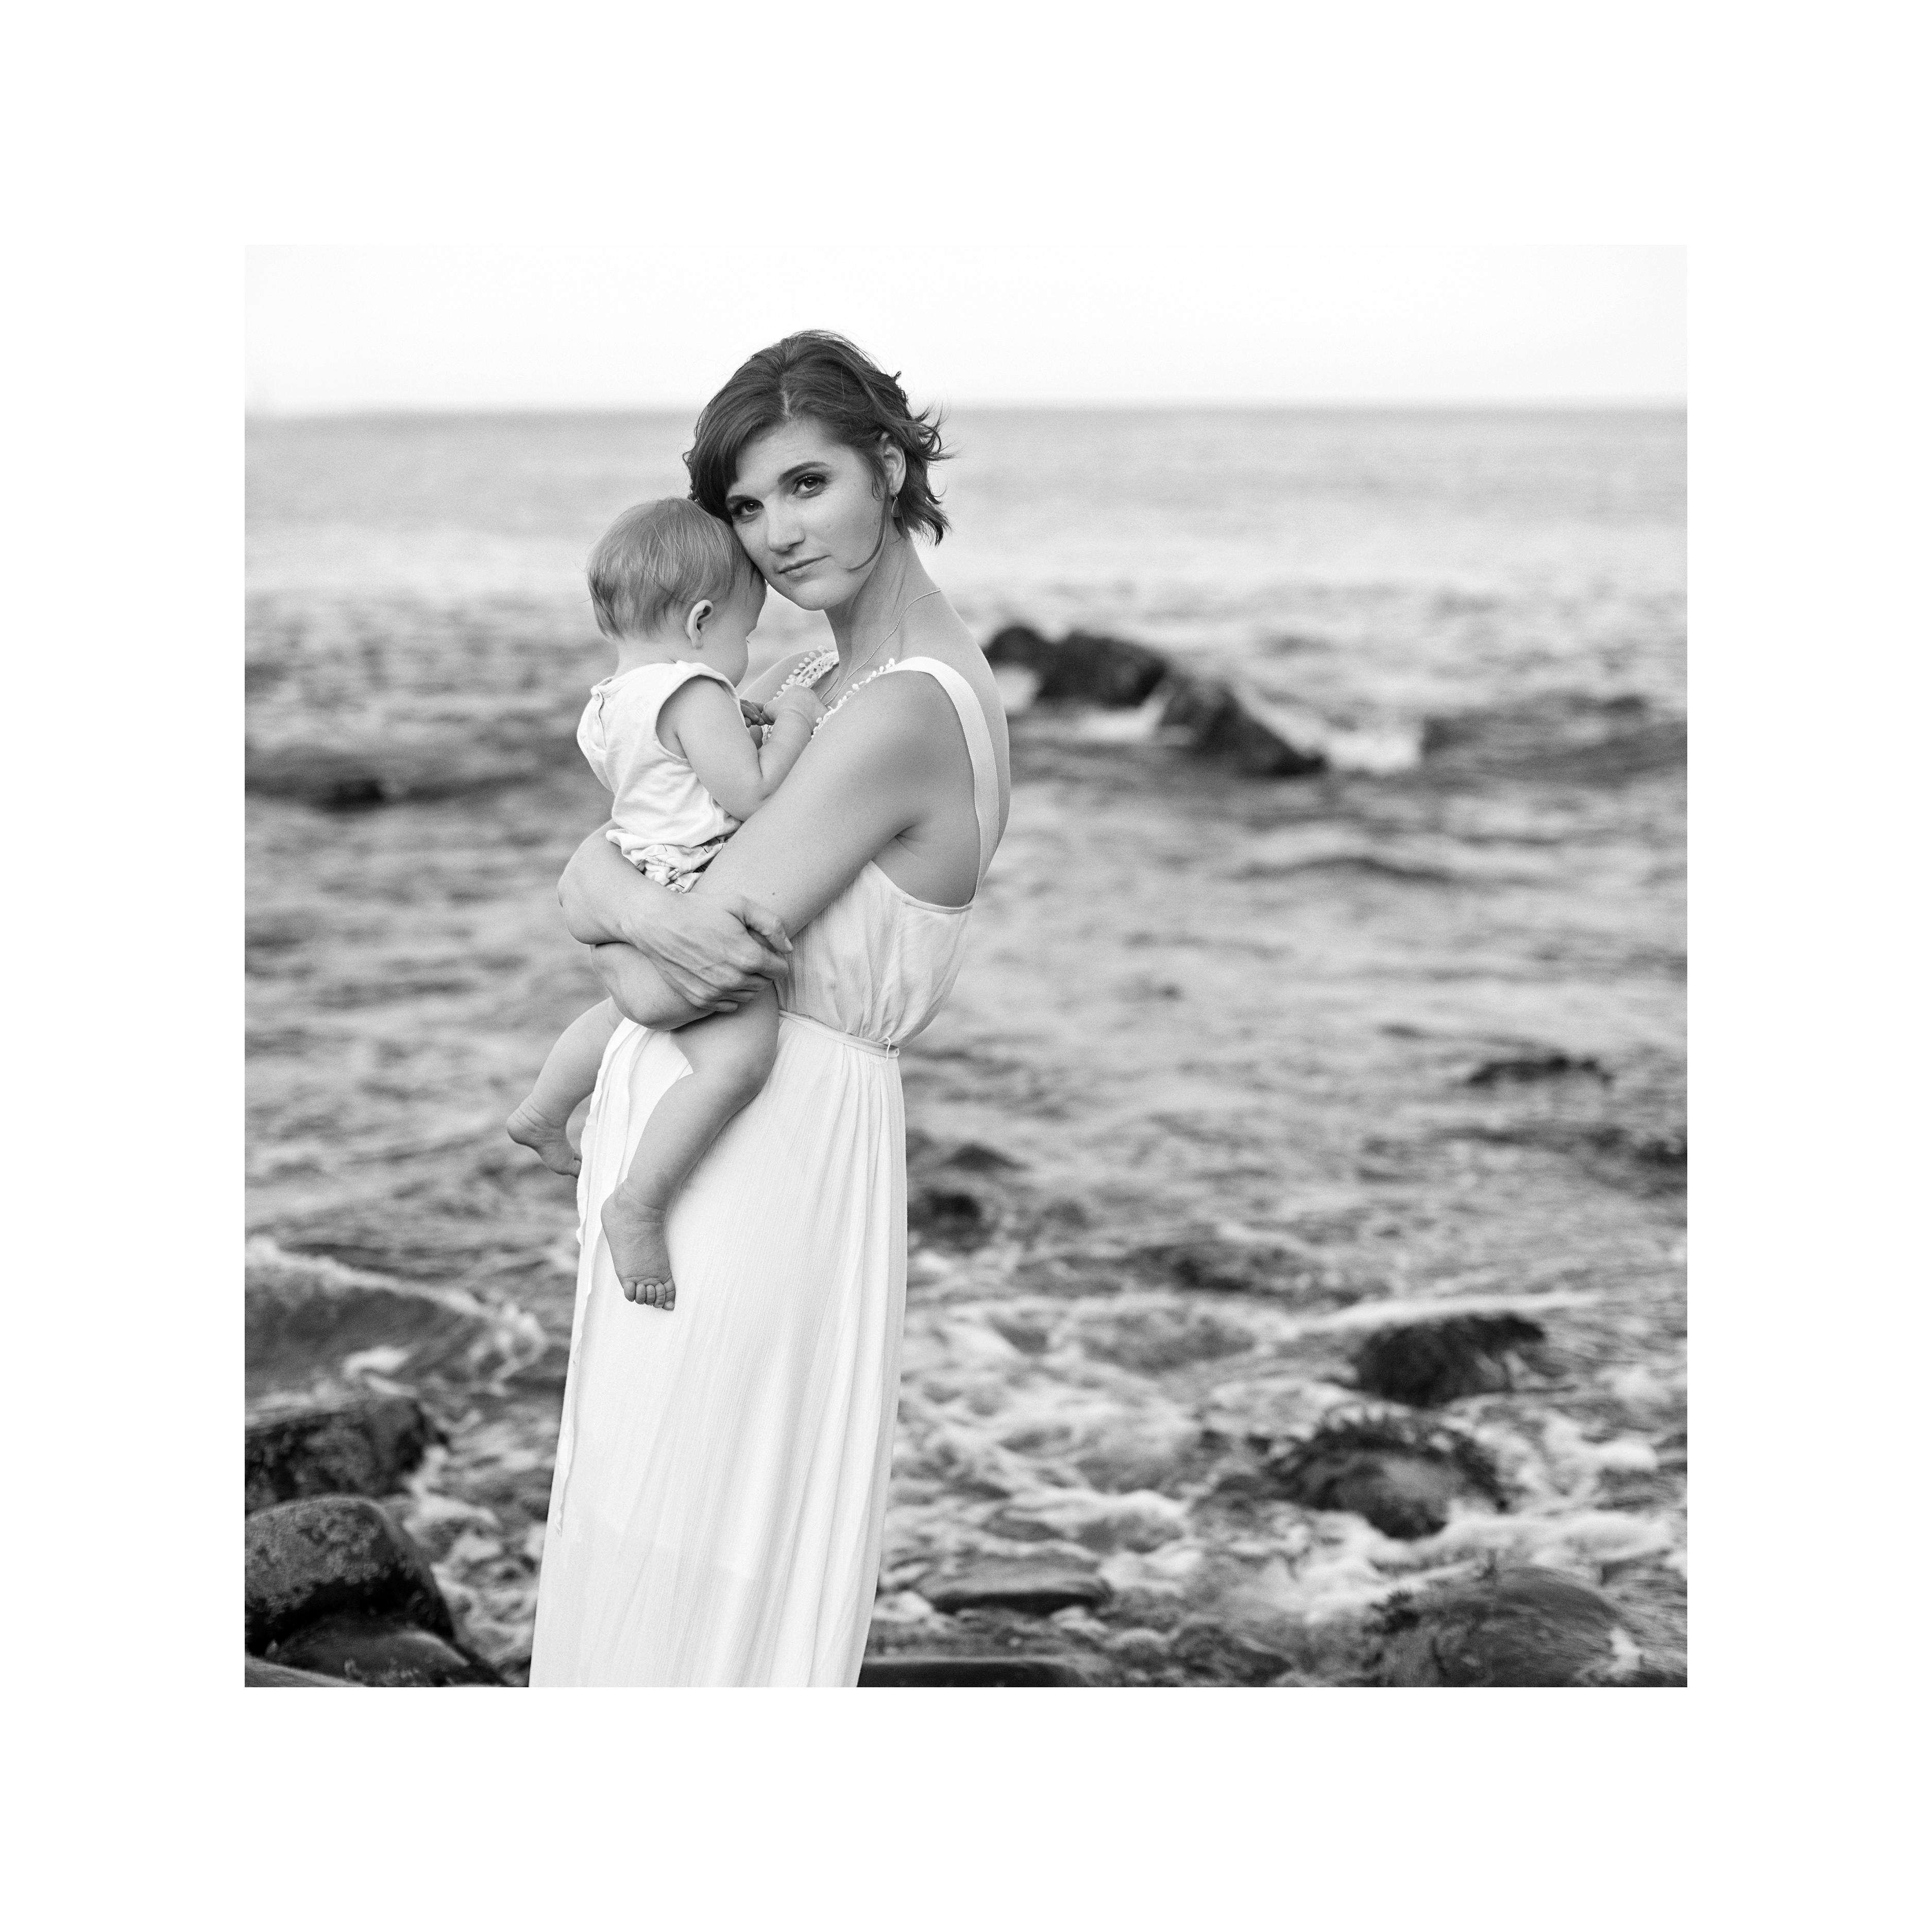 Cape Elizabeth Maine Maternity, Newborn, and Family Photographer Tiffany Farley, http://tiffanyfarley.com